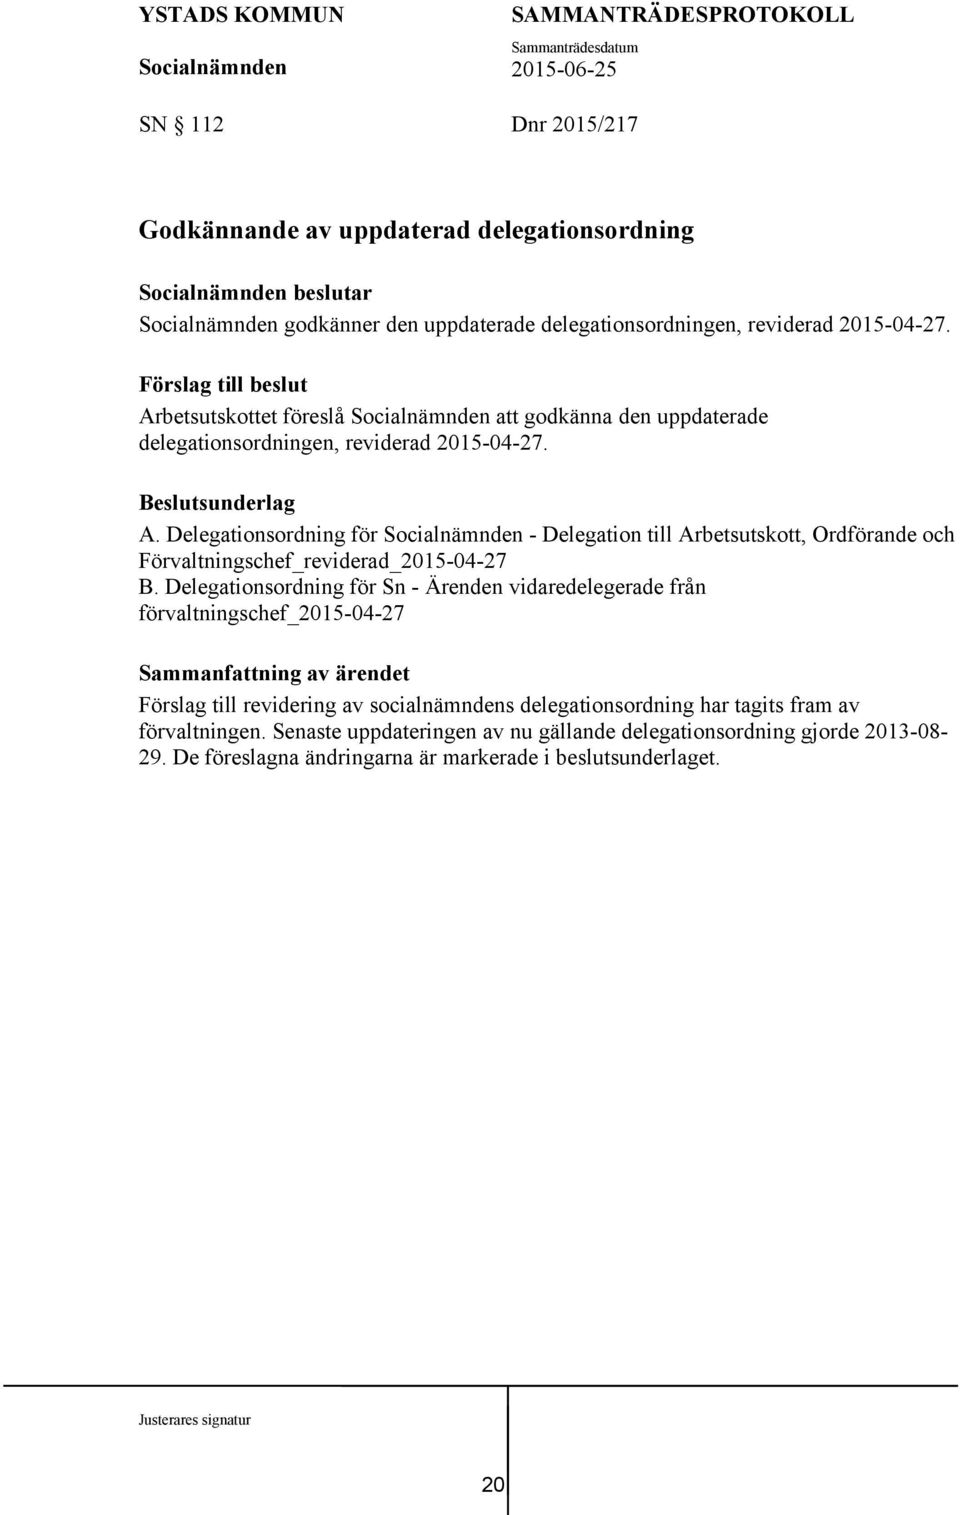 Delegationsordning för - Delegation till Arbetsutskott, Ordförande och Förvaltningschef_reviderad_2015-04-27 B.